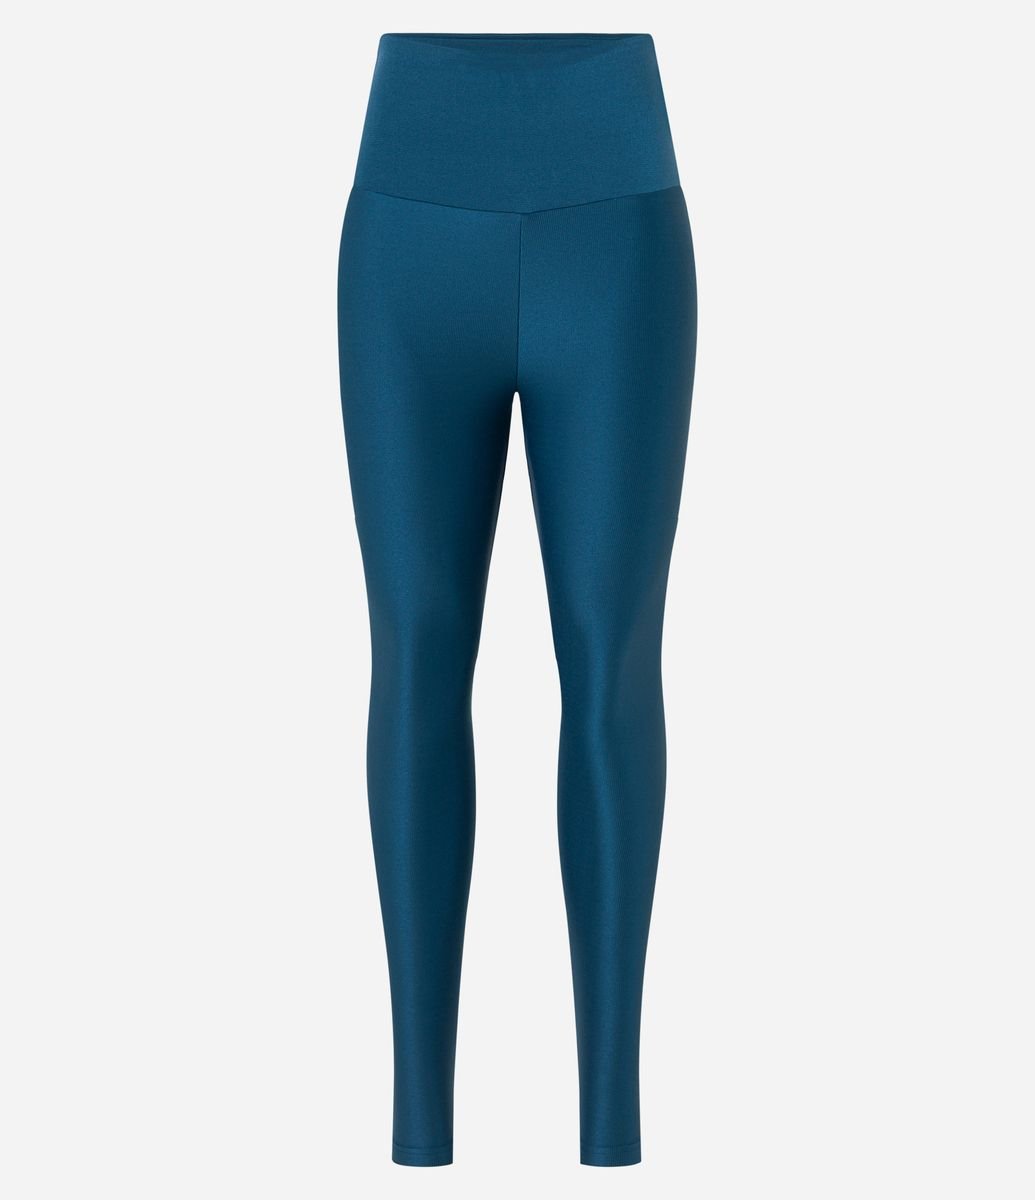 Calça Legging Esportiva em Poliamida Texturizada com Brilho e Cós Alto -  Cor: Azul Marinho - Tamanho: M - Shopping TudoAzul